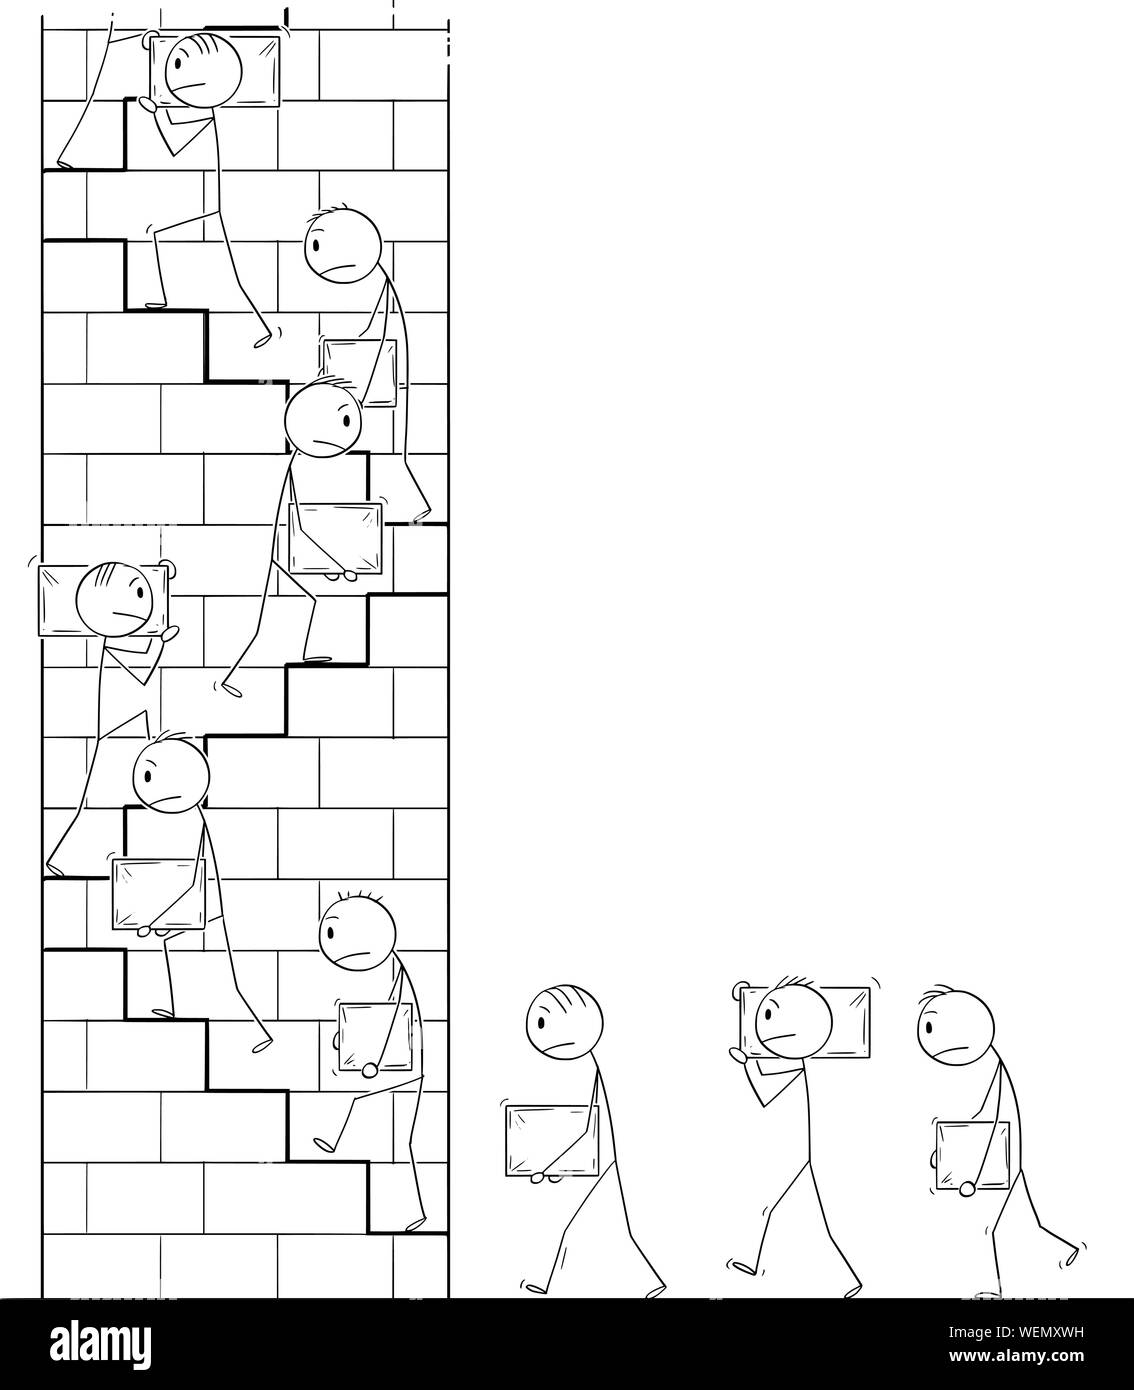 Vektor cartoon Strichmännchen Zeichnen konzeptionelle Darstellung der Männer oder der Arbeitnehmer mit großen Steinen als Baumaterial und Treppensteigen auf hohen Turm. Stock Vektor